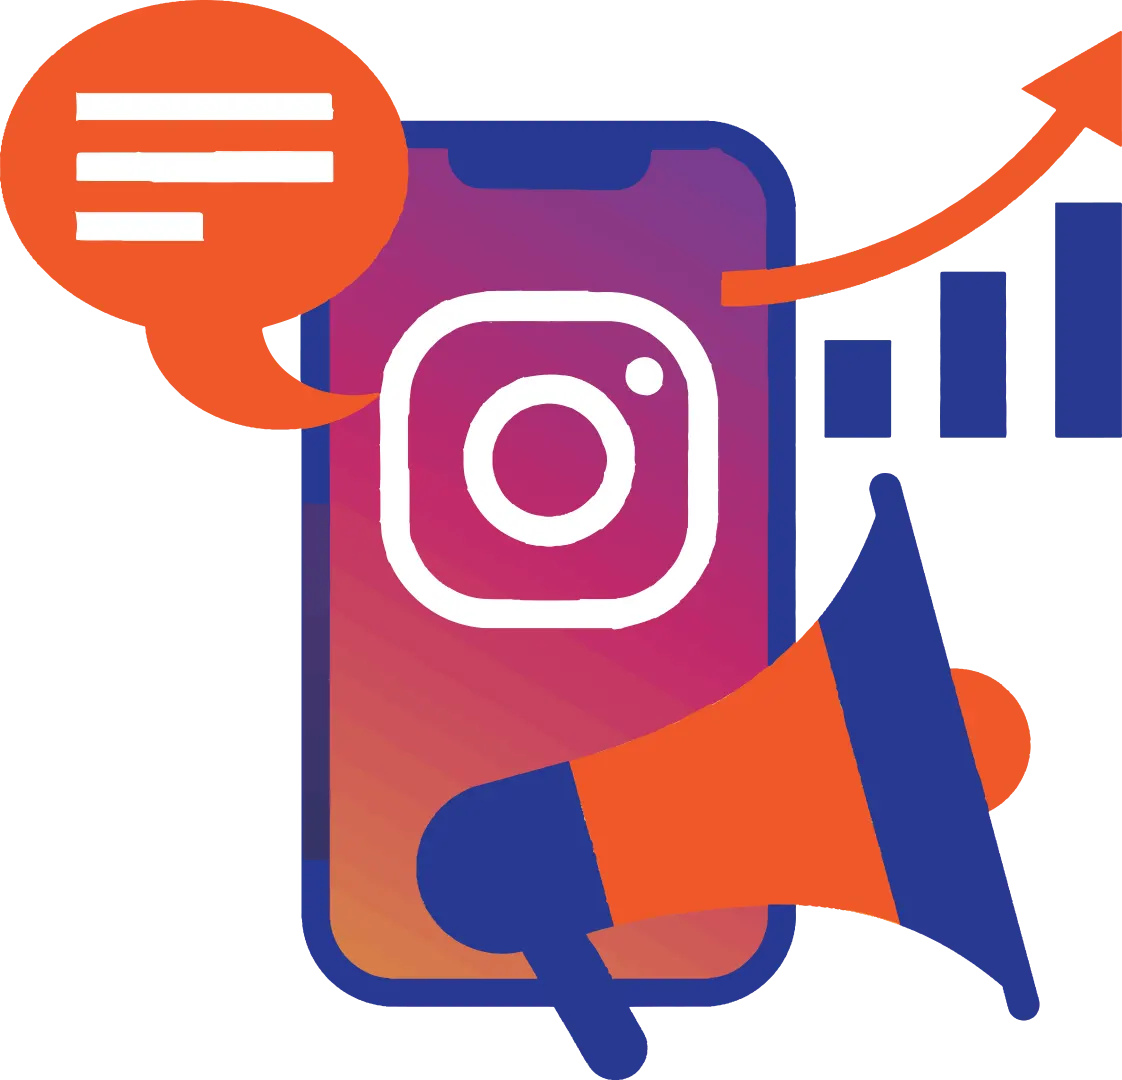 Instagram Marketing Services